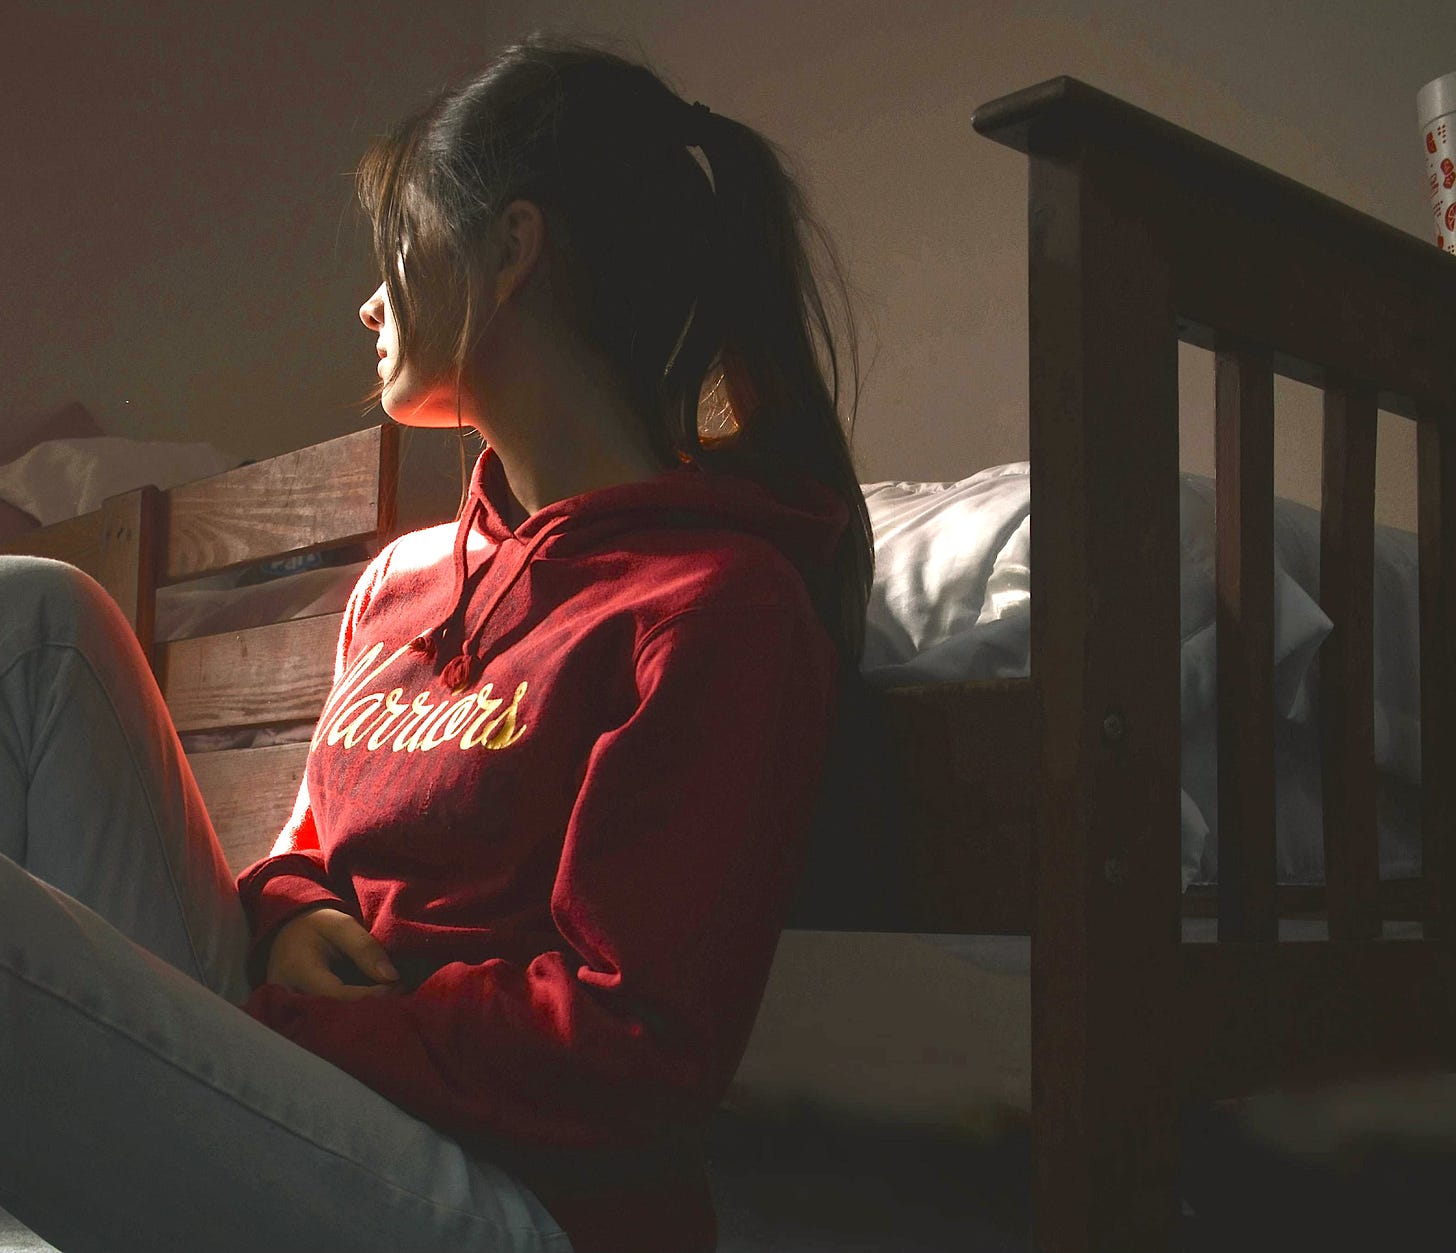 Woman in despair red sweatshirt leaning against bed